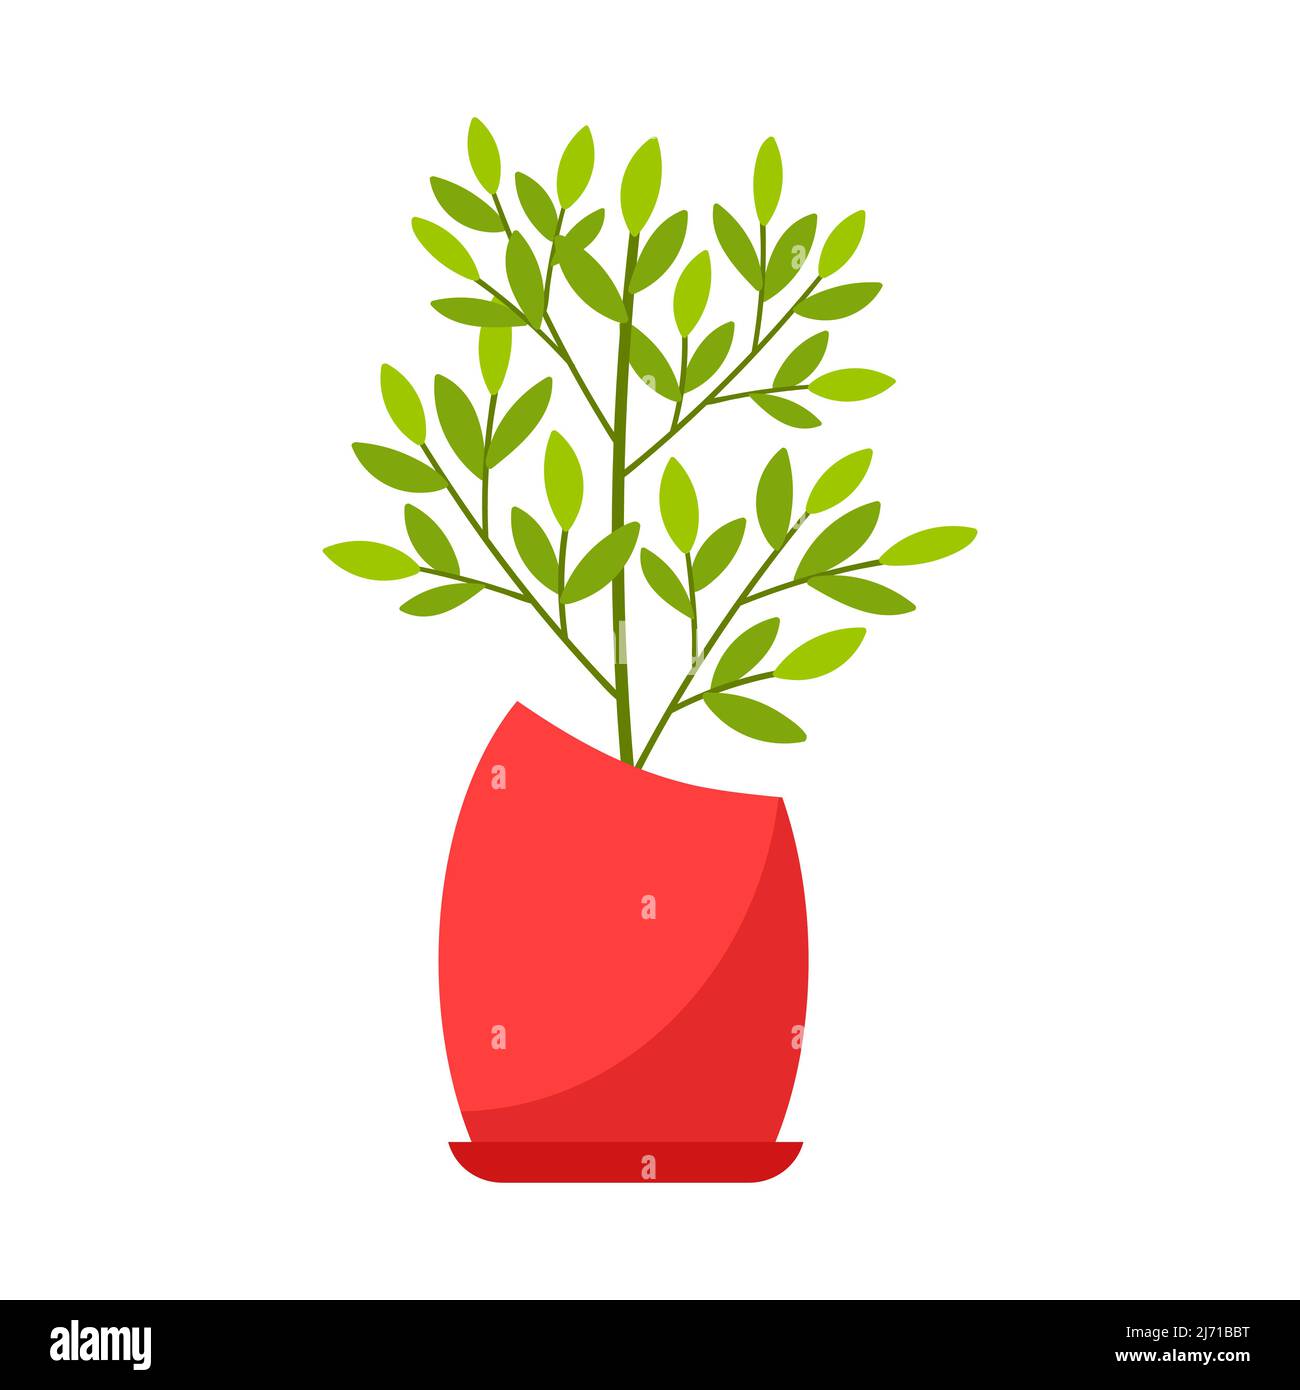 Plante intérieure, ficus dans un pot rouge. Usine à feuilles caduques. Illustration vectorielle de style dessin animé plat, isolée sur fond blanc Illustration de Vecteur